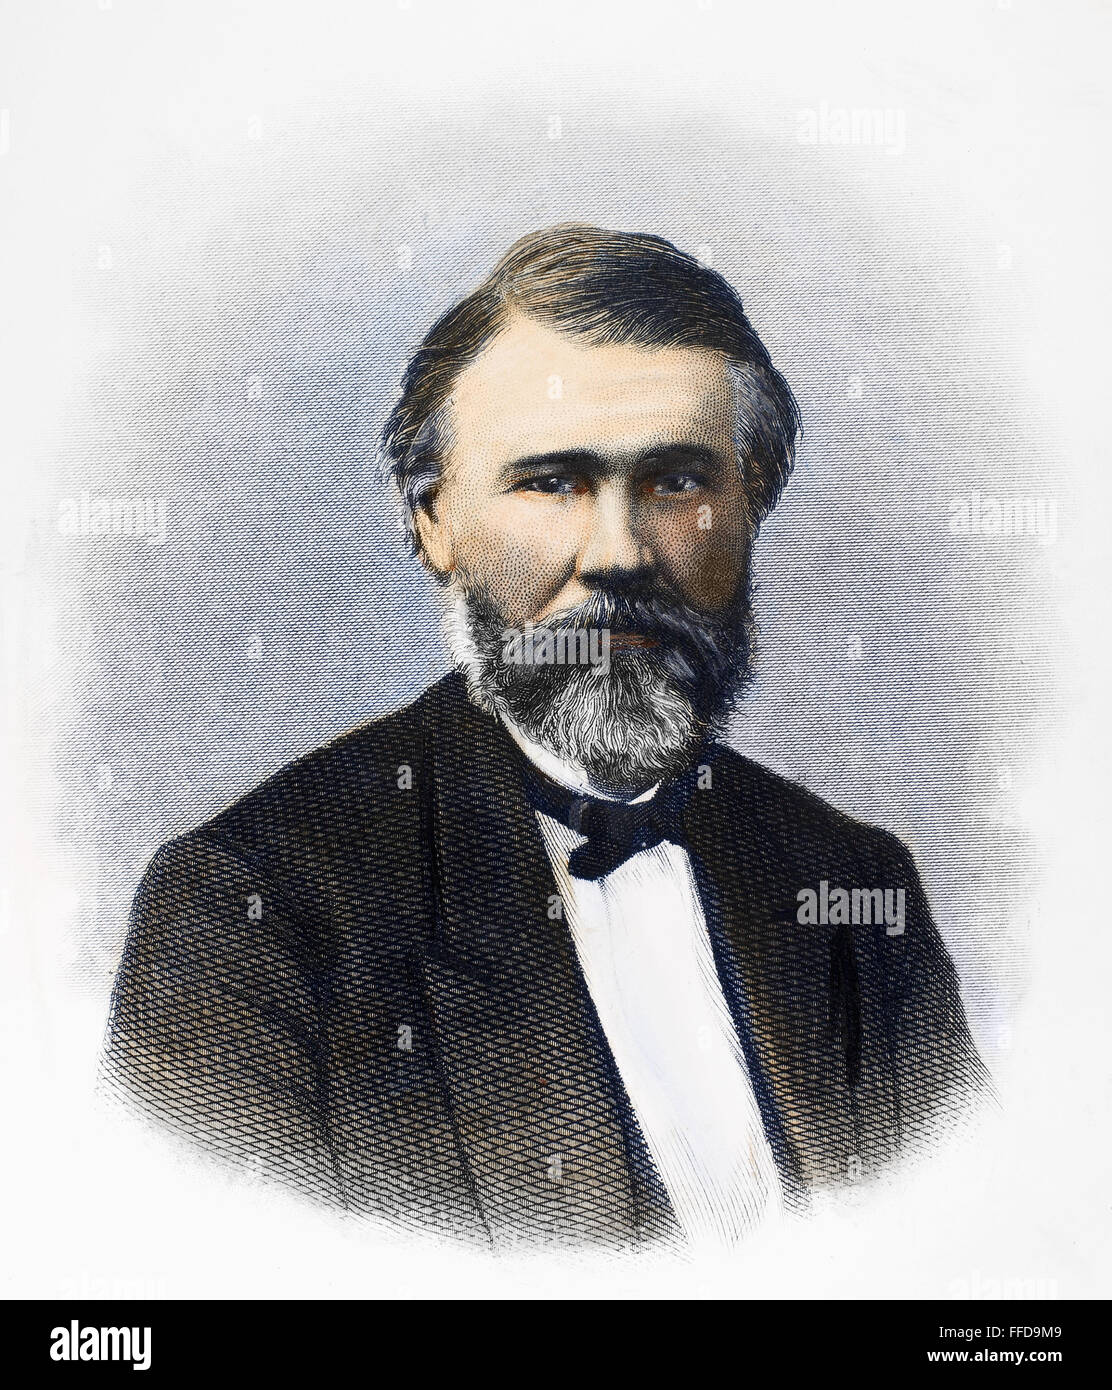 RICHARD JORDAN GATLING /n(1818-1903). L'inventeur américain. Gravure sur acier, fin du xixe siècle. Banque D'Images